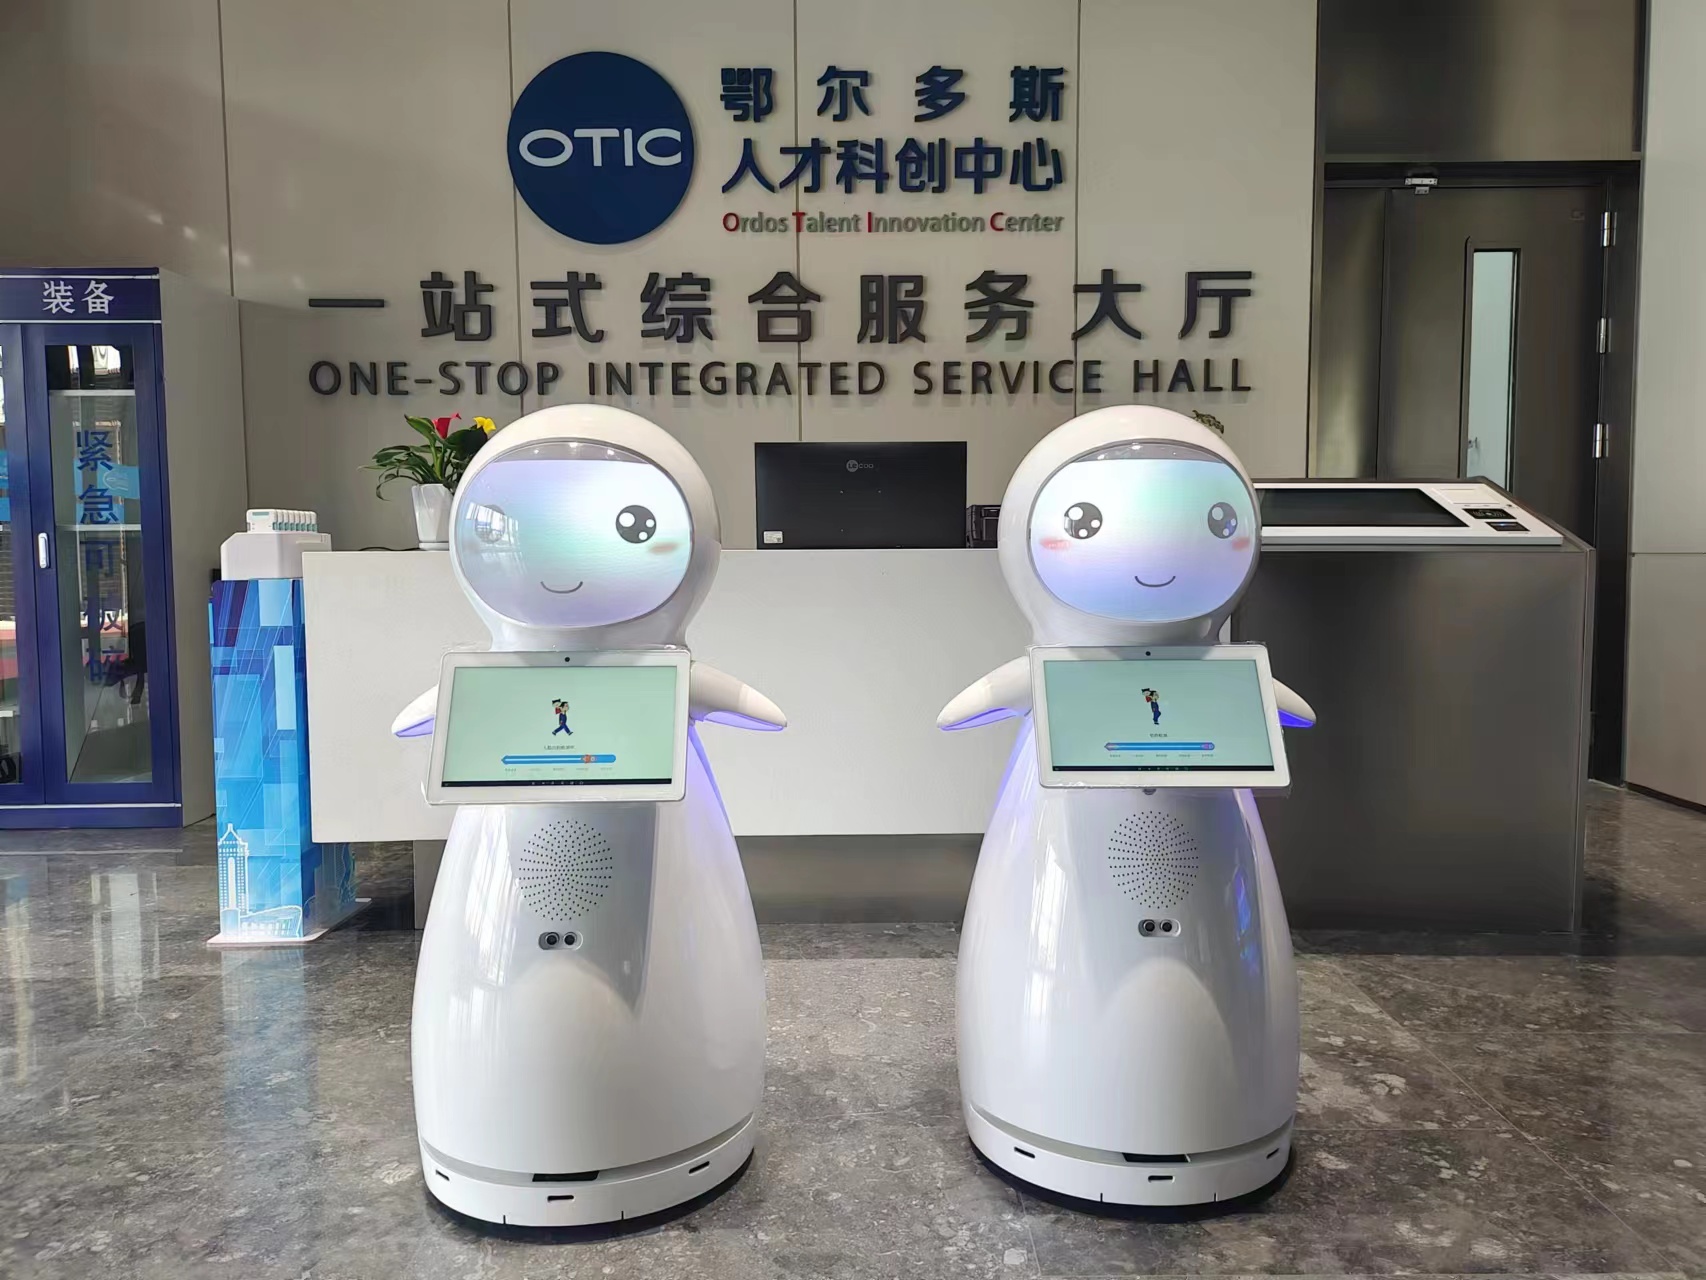 Robot tuyết đã hỗ trợ lễ ra mắt chính thức “Trung tâm Đổi mới Khoa học và Công nghệ Tài năng Erdos”!